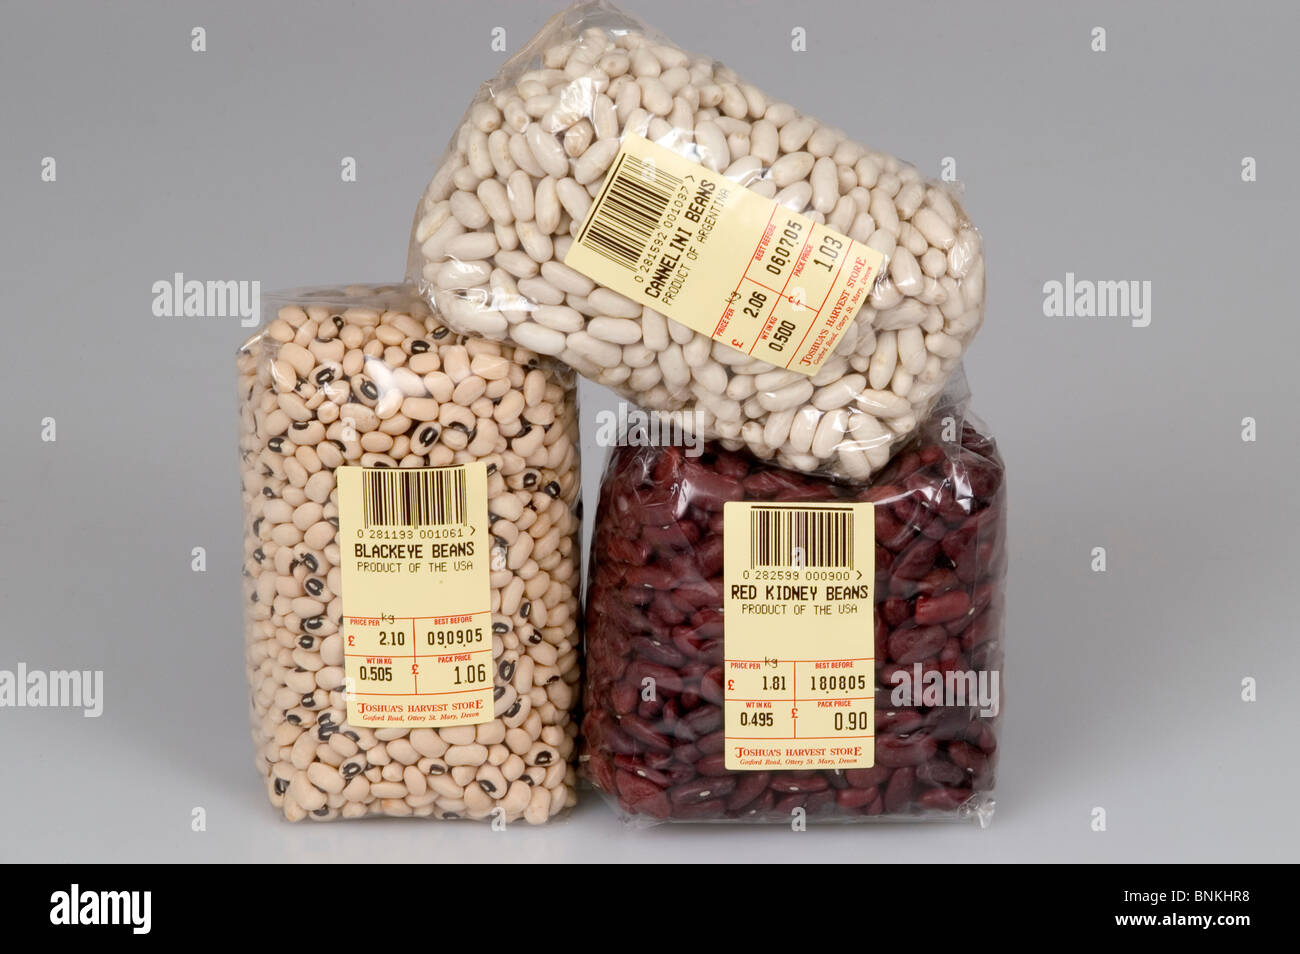 Colture di impulso, fagioli phaseolus in confezioni - fagioli rossi, fagioli neri, cannelini beans Foto Stock